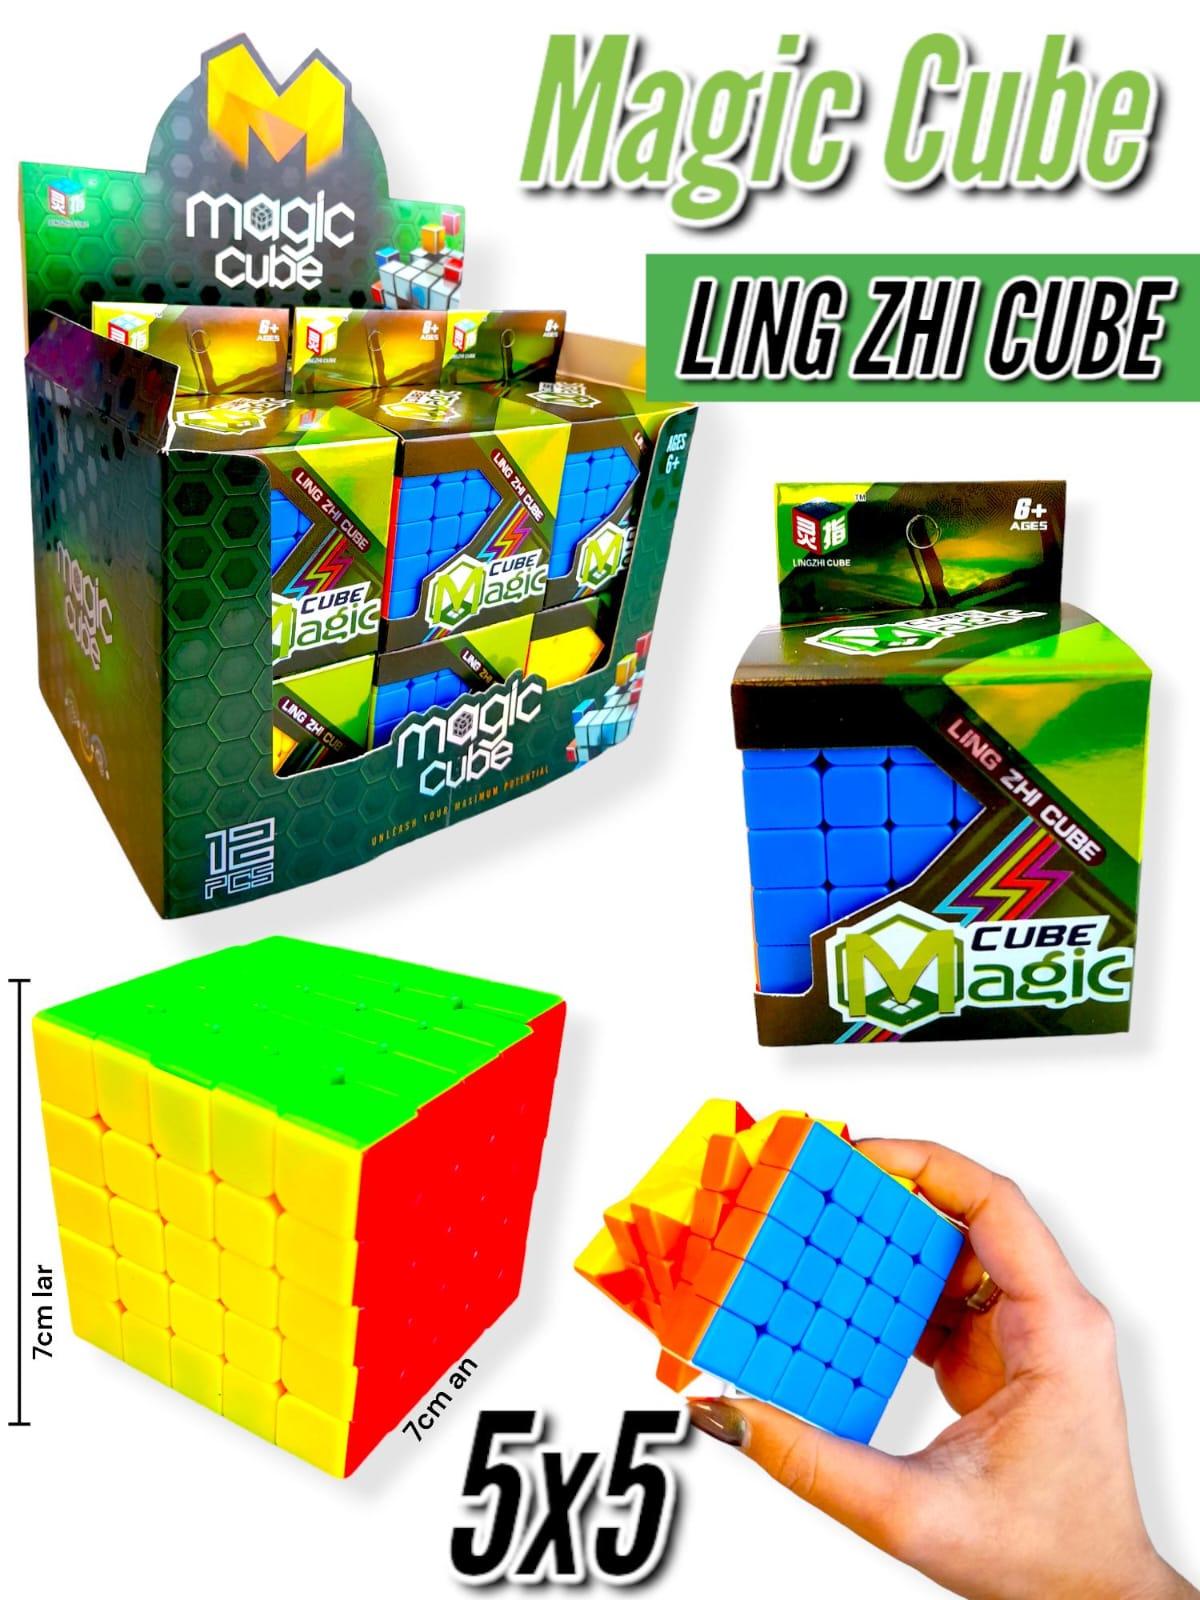 Magic Cube LING ZHI CUBO 5X5